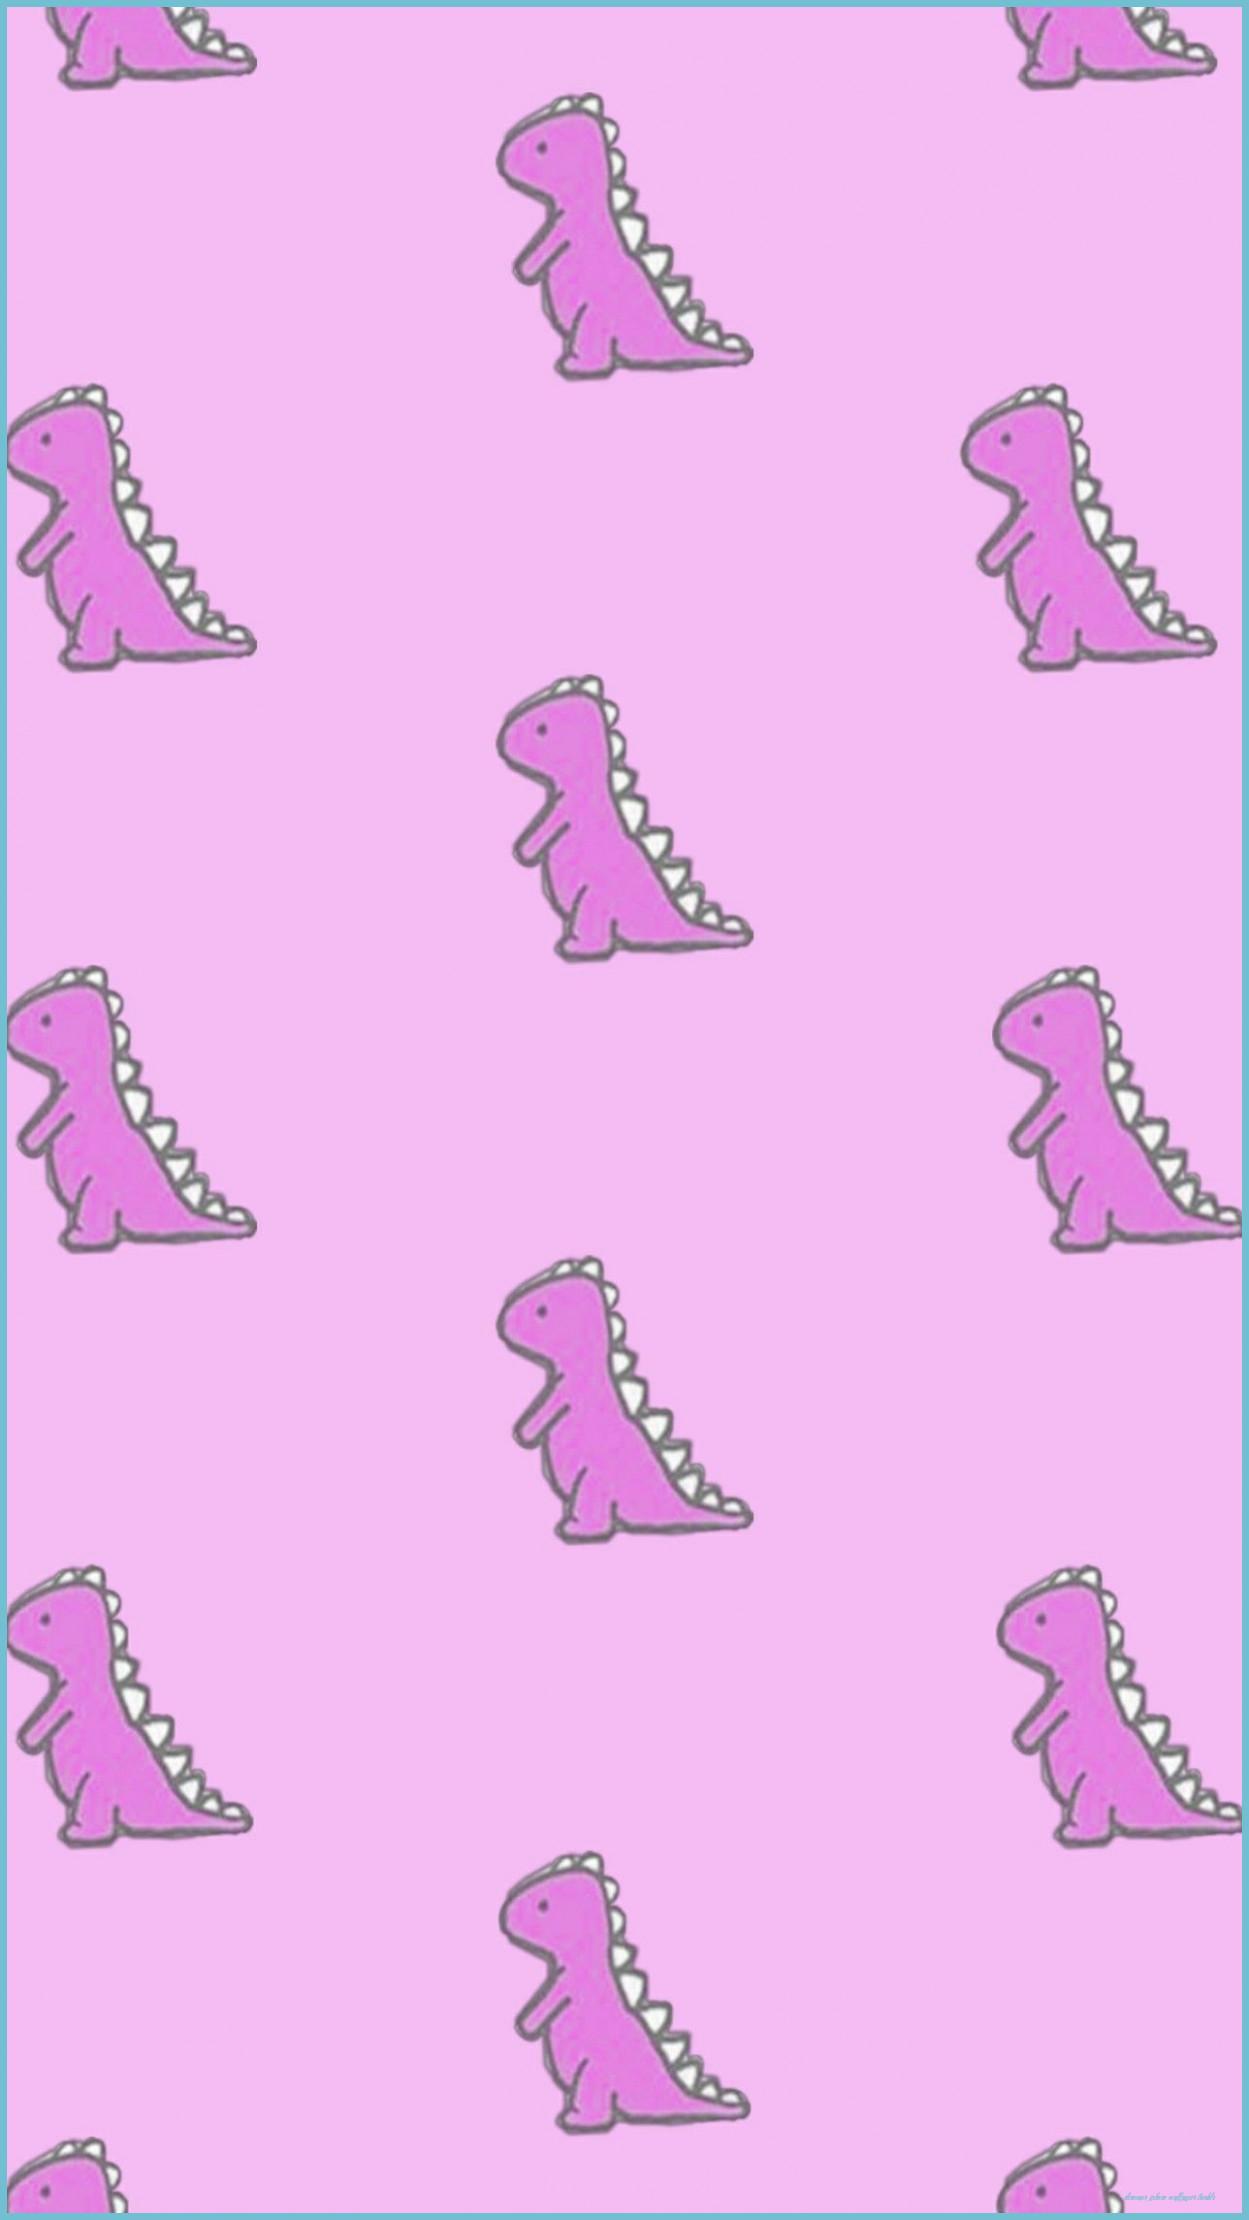 Cute Pink Dinosaur Wallpapers: Ánh mắt tinh nghịch, nụ cười rạng rỡ và lớp lông màu hồng đáng yêu - đó chính là những gì bạn sẽ được chiêm ngưỡng trong bộ sưu tập wallpaper Dinosaur hồng này. Sẽ là một trải nghiệm tuyệt vời khi xem các hình ảnh này.